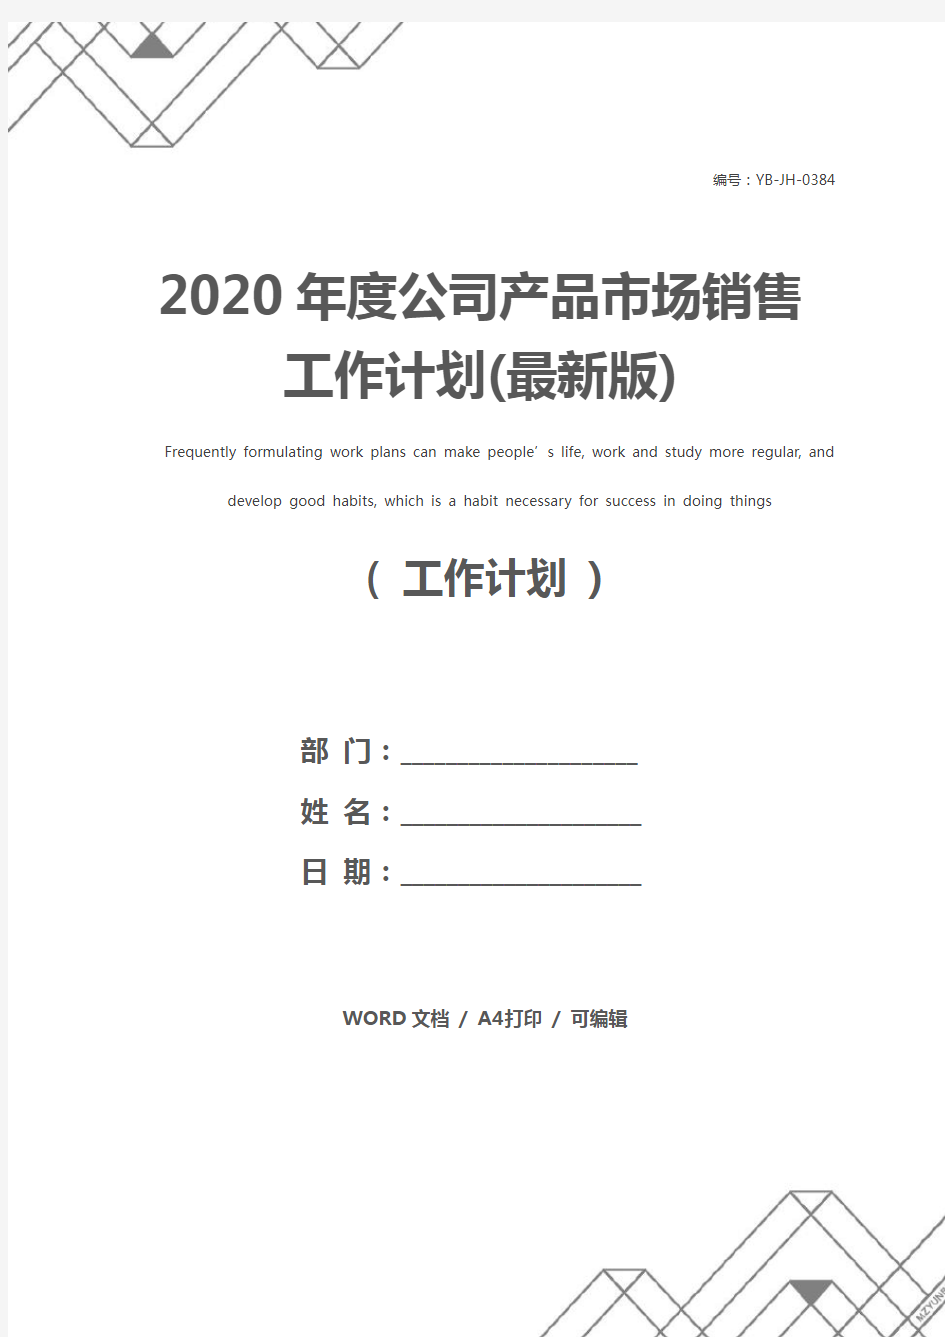 2020年度公司产品市场销售工作计划(最新版)